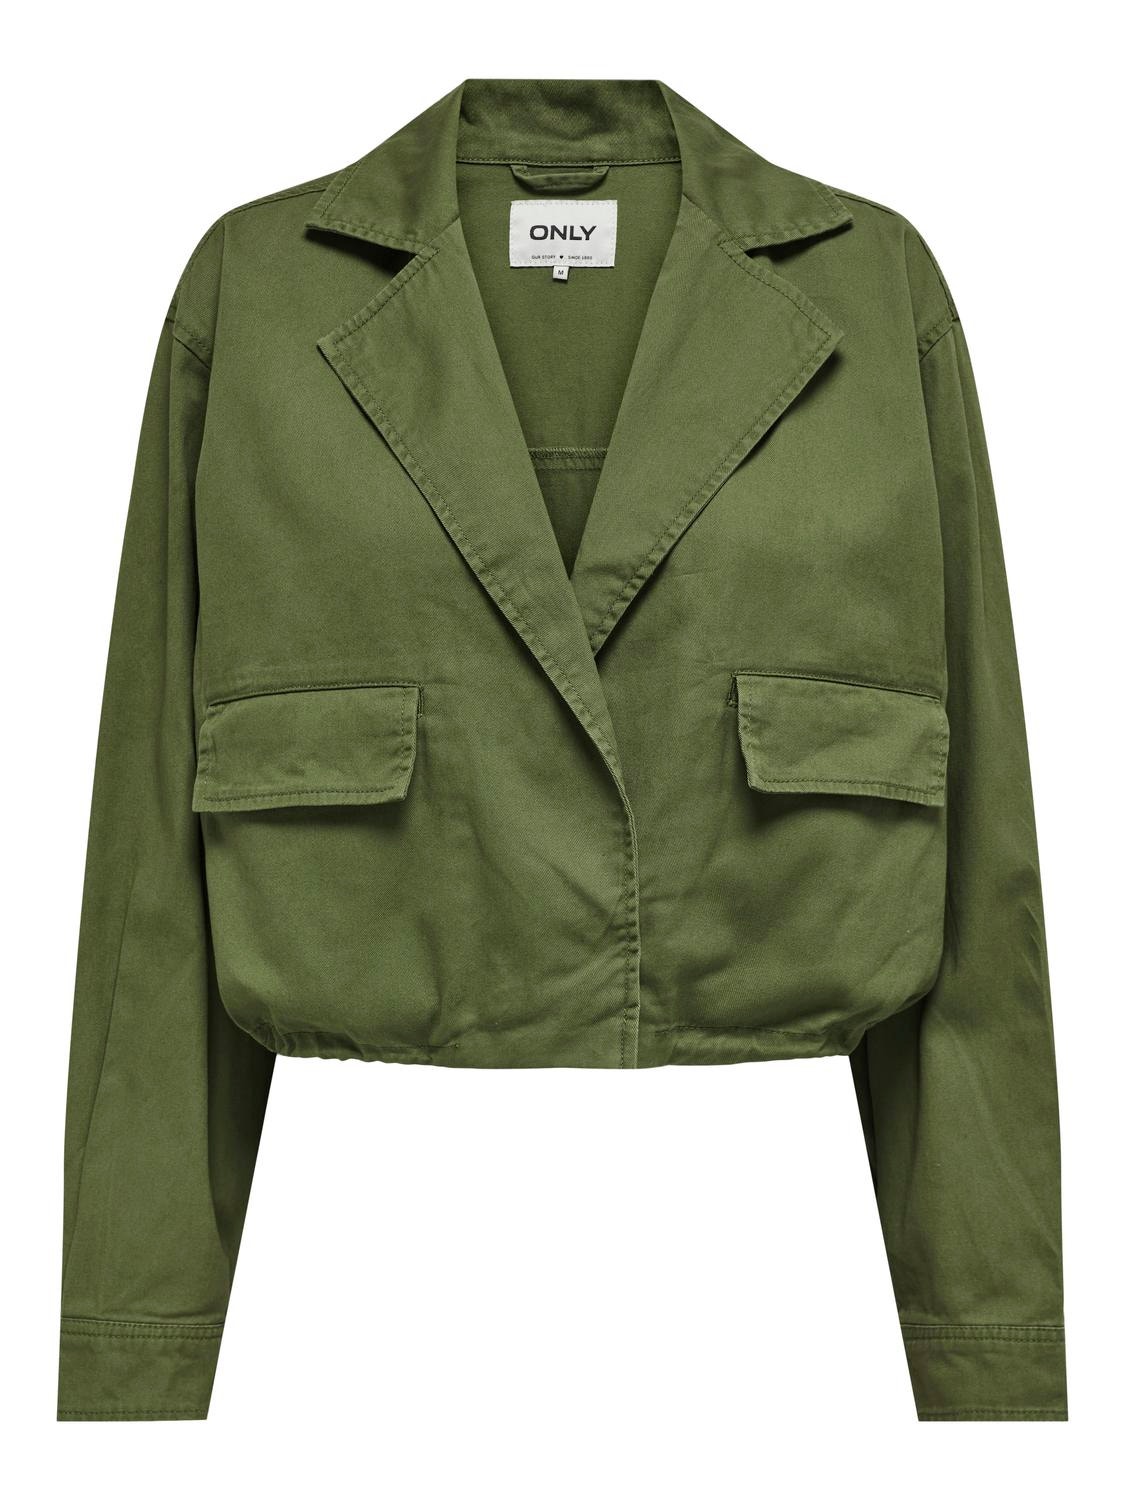 ONLY Short jacket -Capulet Olive - 15308769